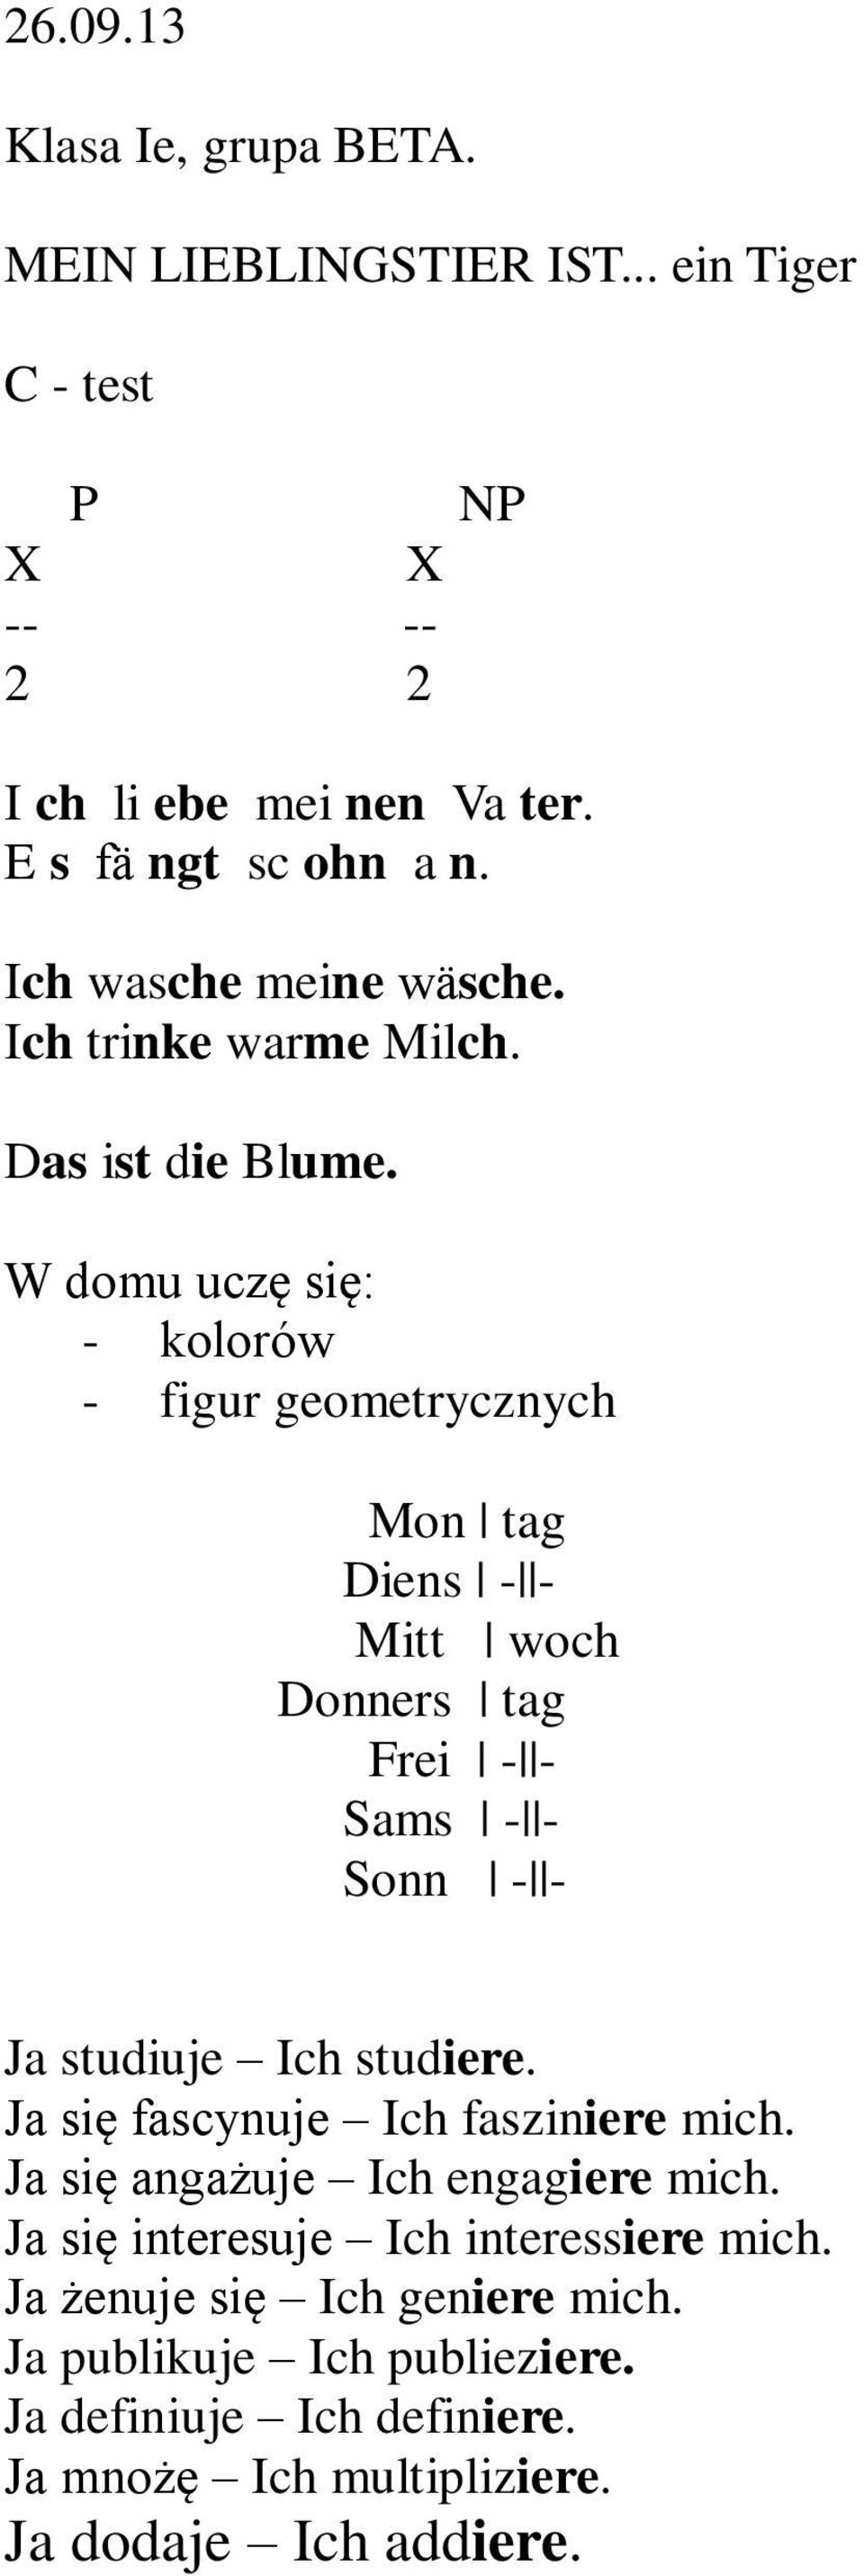 W domu uczę się: - kolorów - figur geometrycznych Mon tag Diens - - Mitt woch Donners tag Frei - - Sams - - Sonn - - Ja studiuje Ich studiere.